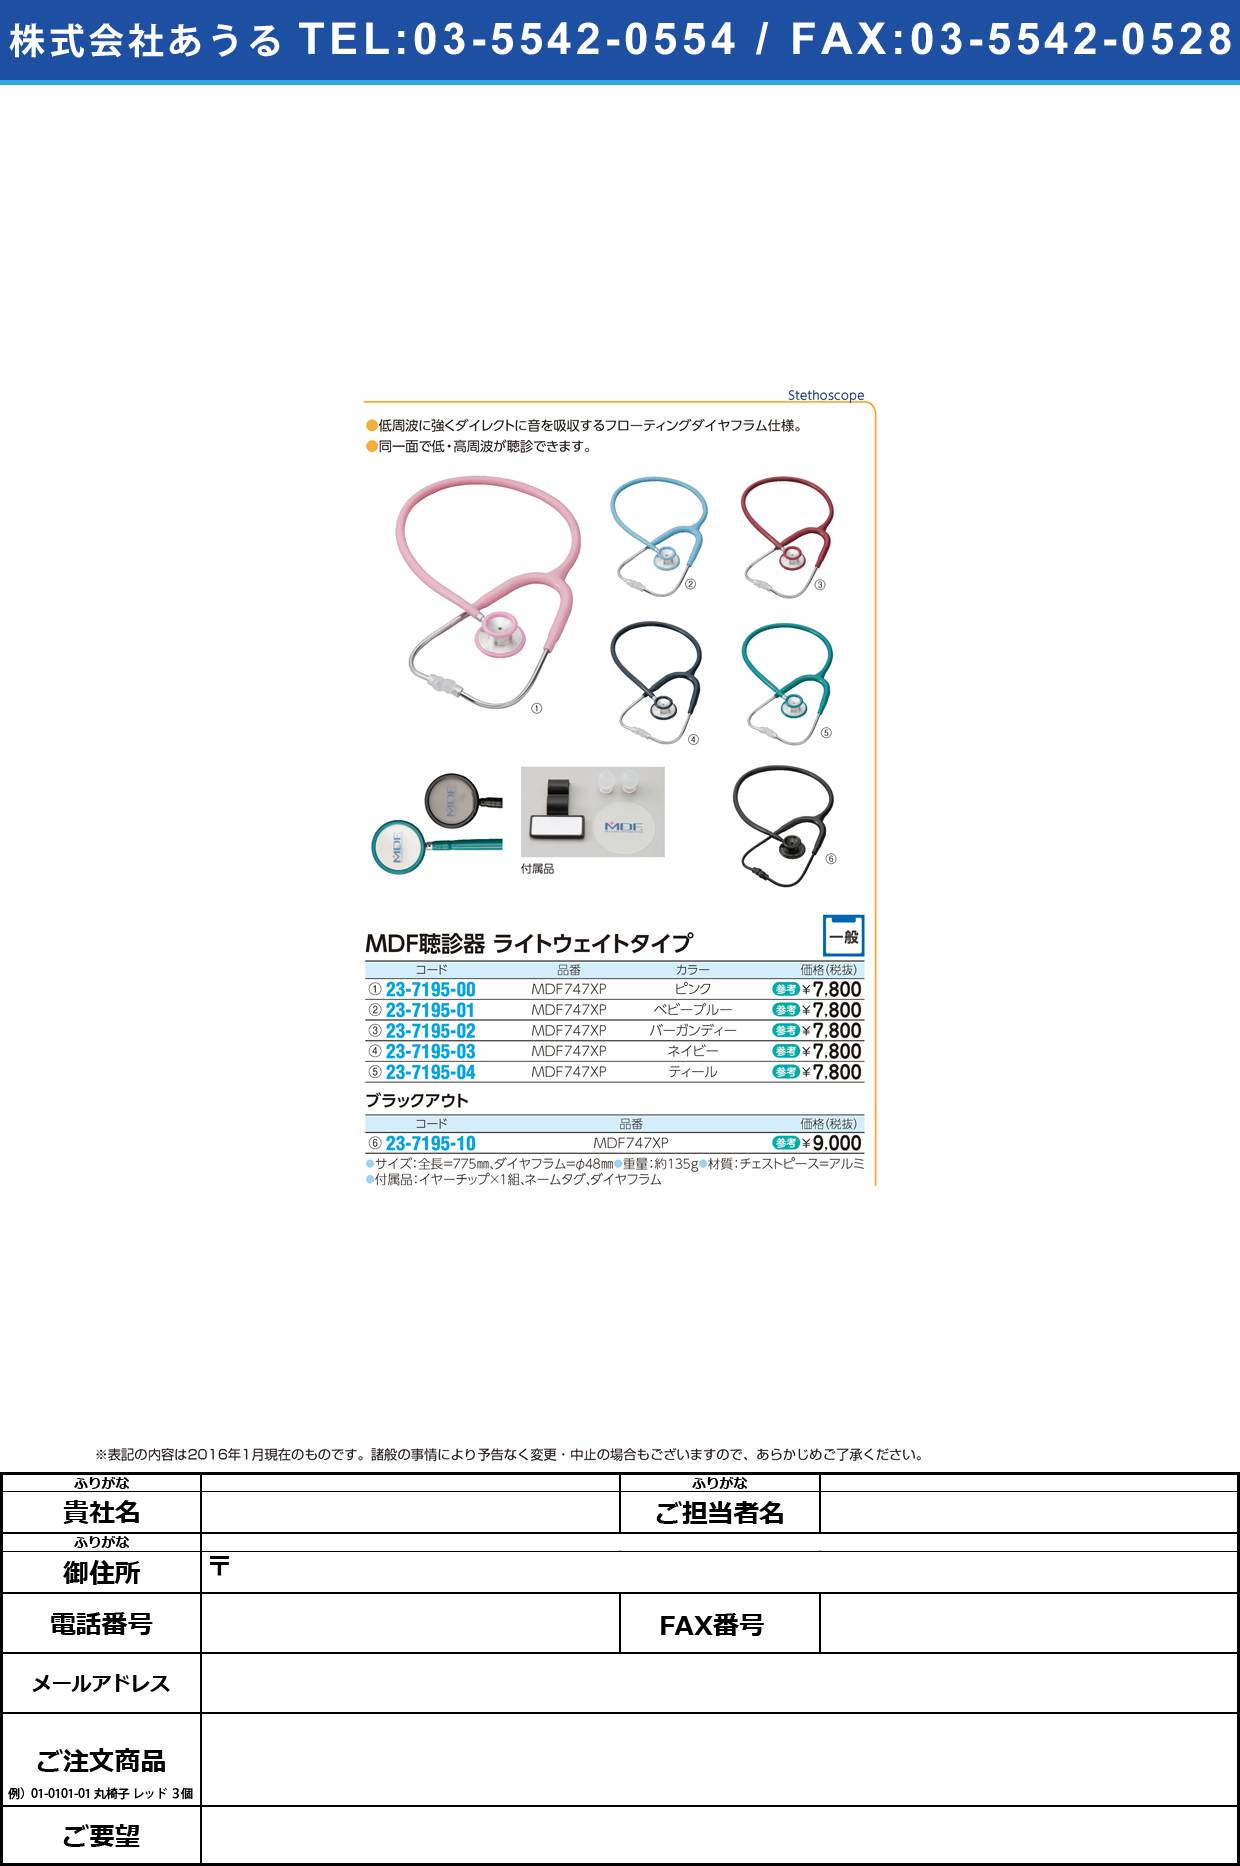 ＭＤＦ聴診器ライトウェイトタイプ MDFﾁｮｳｼﾝｷﾗｲﾄｳｪｲﾄﾀｲﾌﾟ MDF747XP(ﾌﾞﾗｯｸｱｳﾄ)